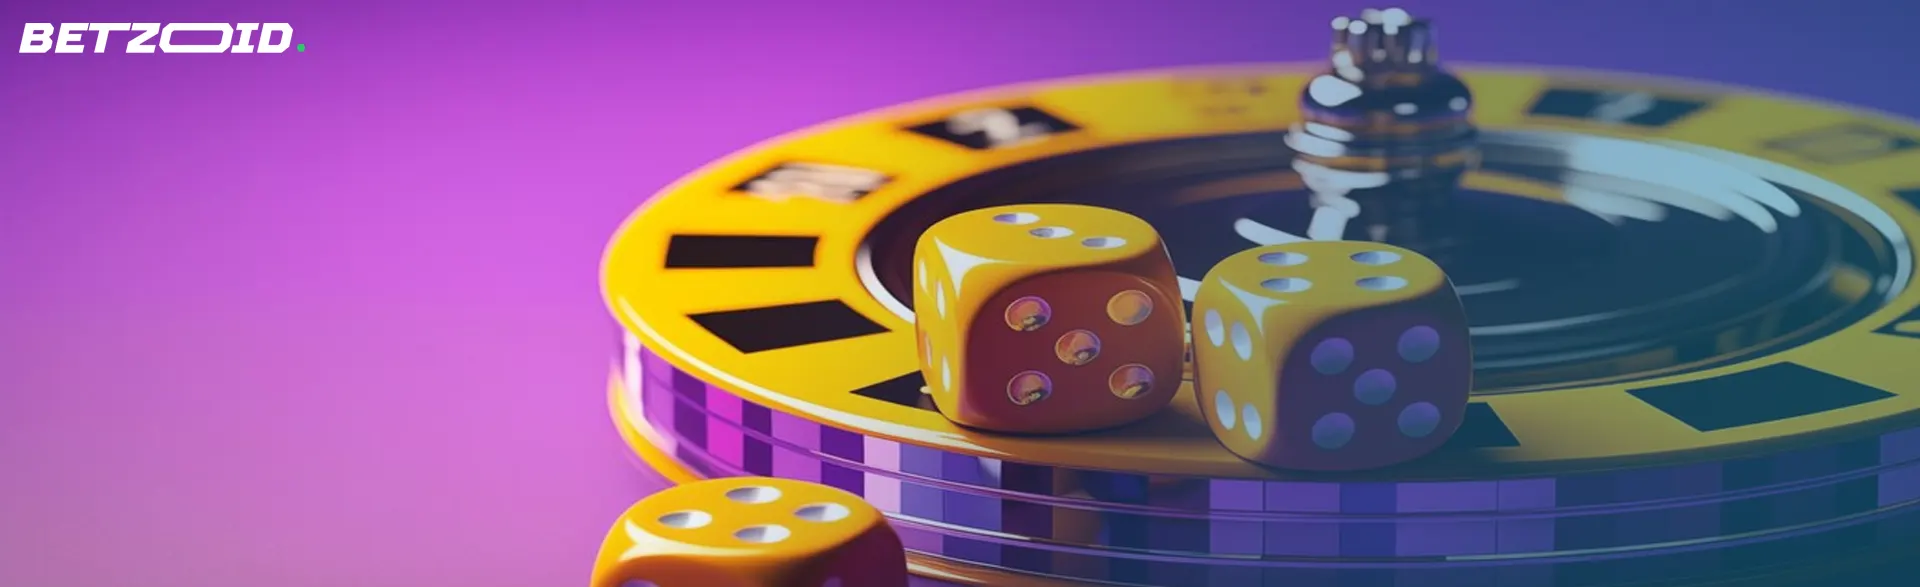 Dados amarillos sobre una ruleta de casino, representando los juegos de ruleta con crupier en vivo.